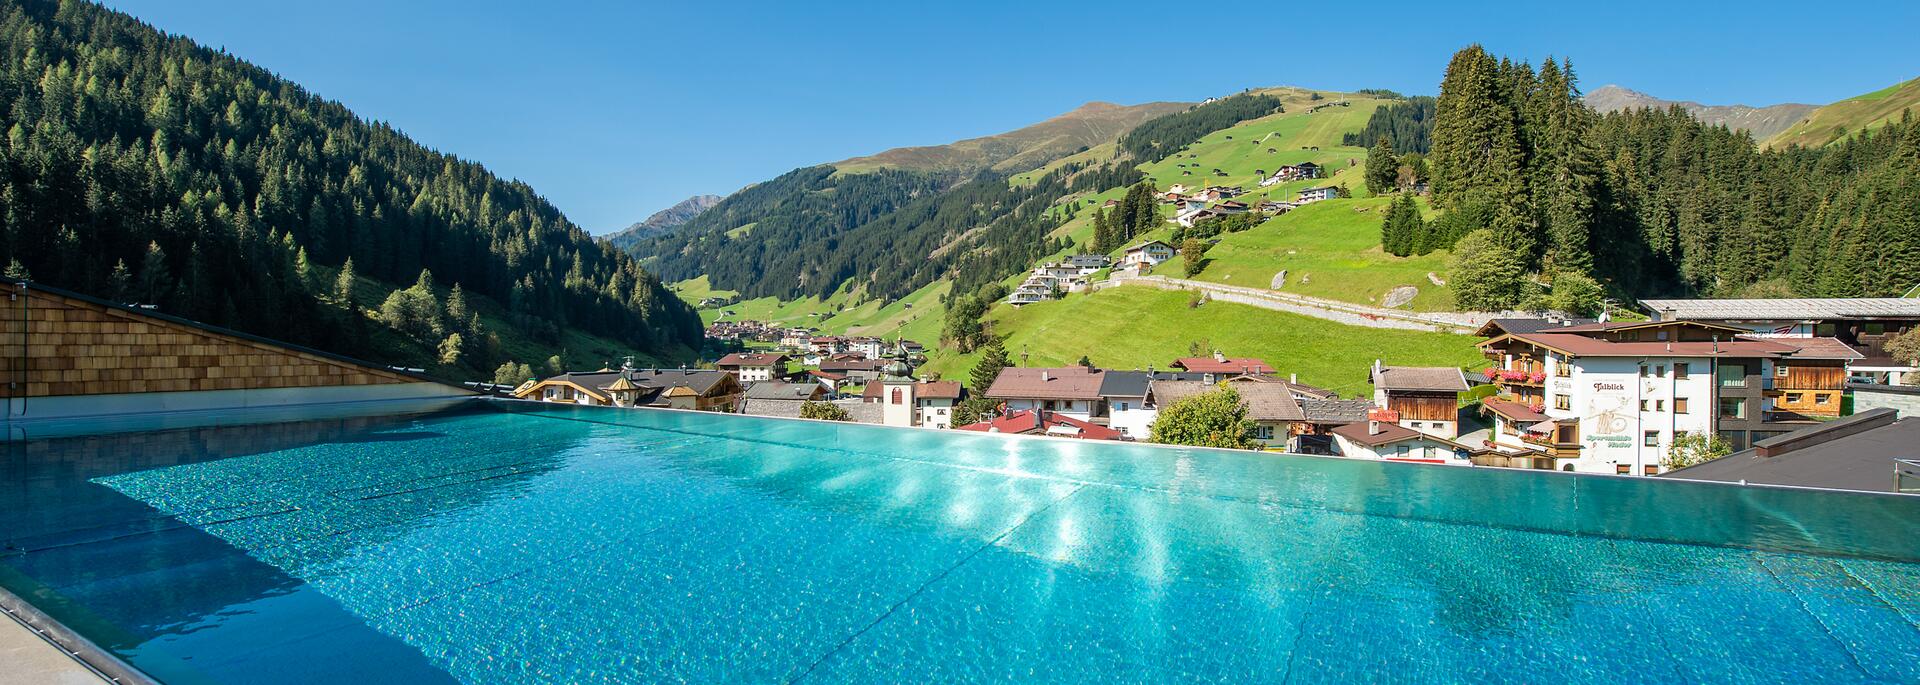 roof top Pool in den Alpen Tirol